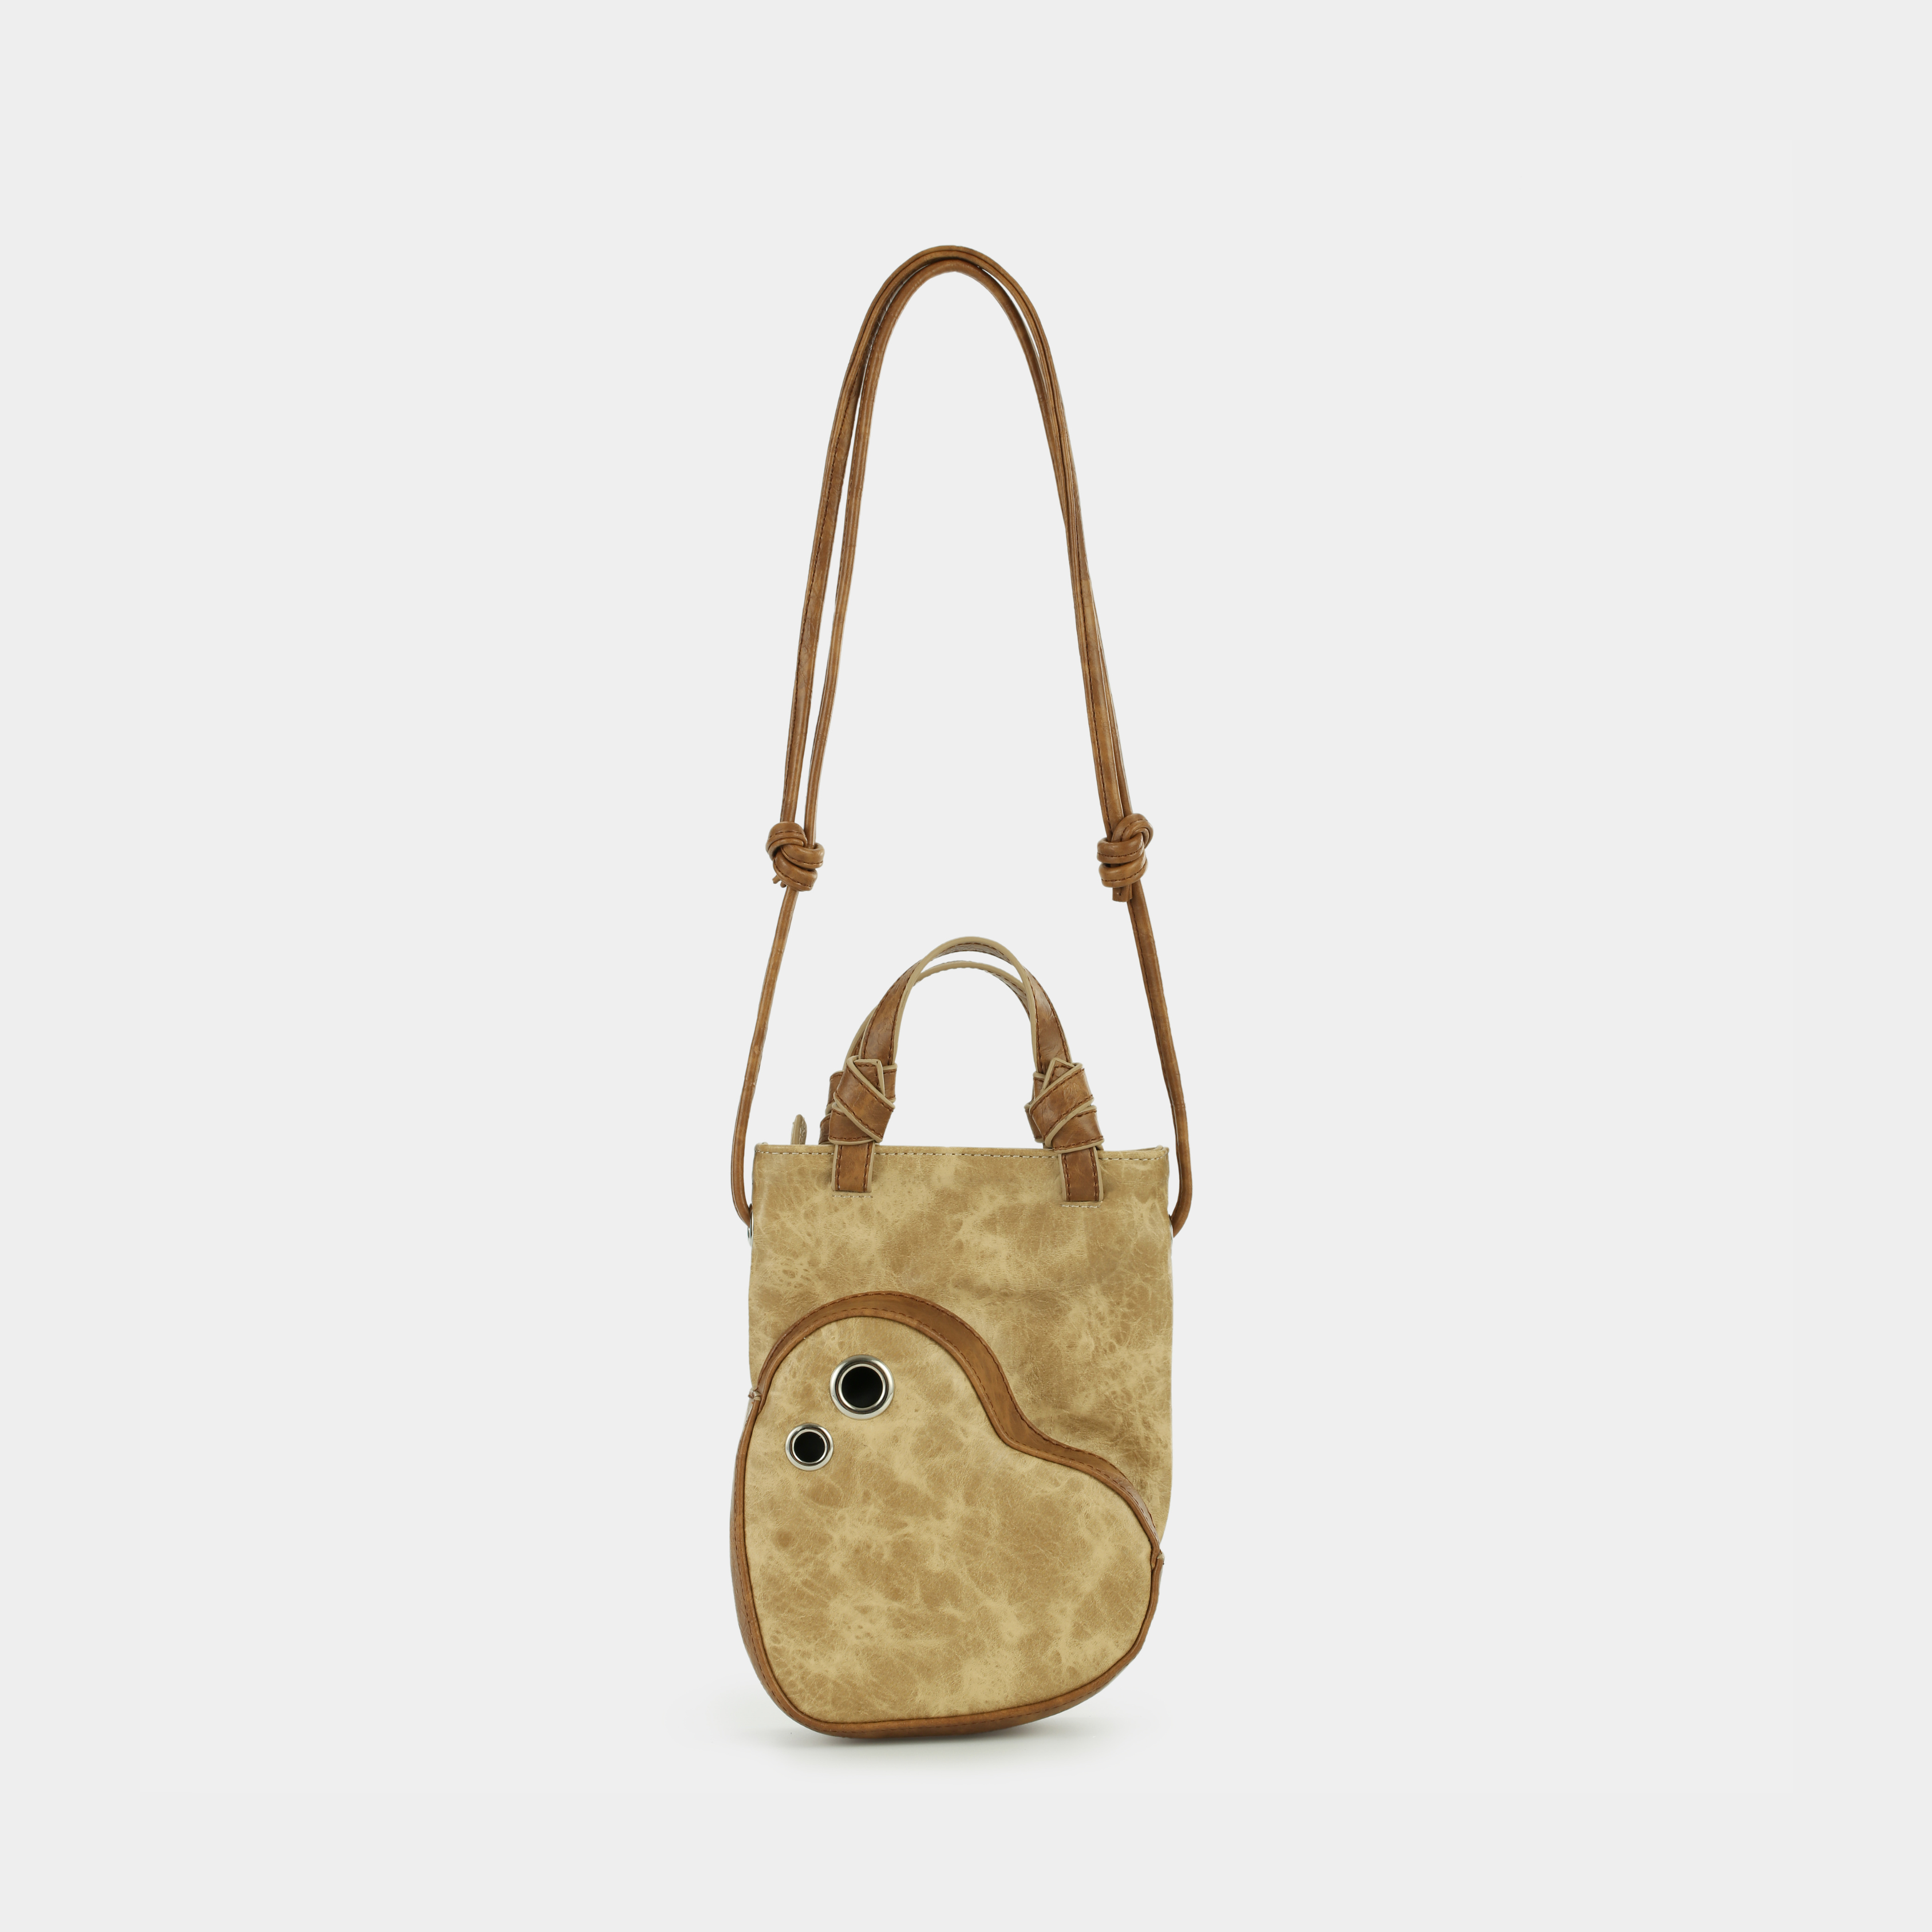 Growing Heart handbag in beige x brown color